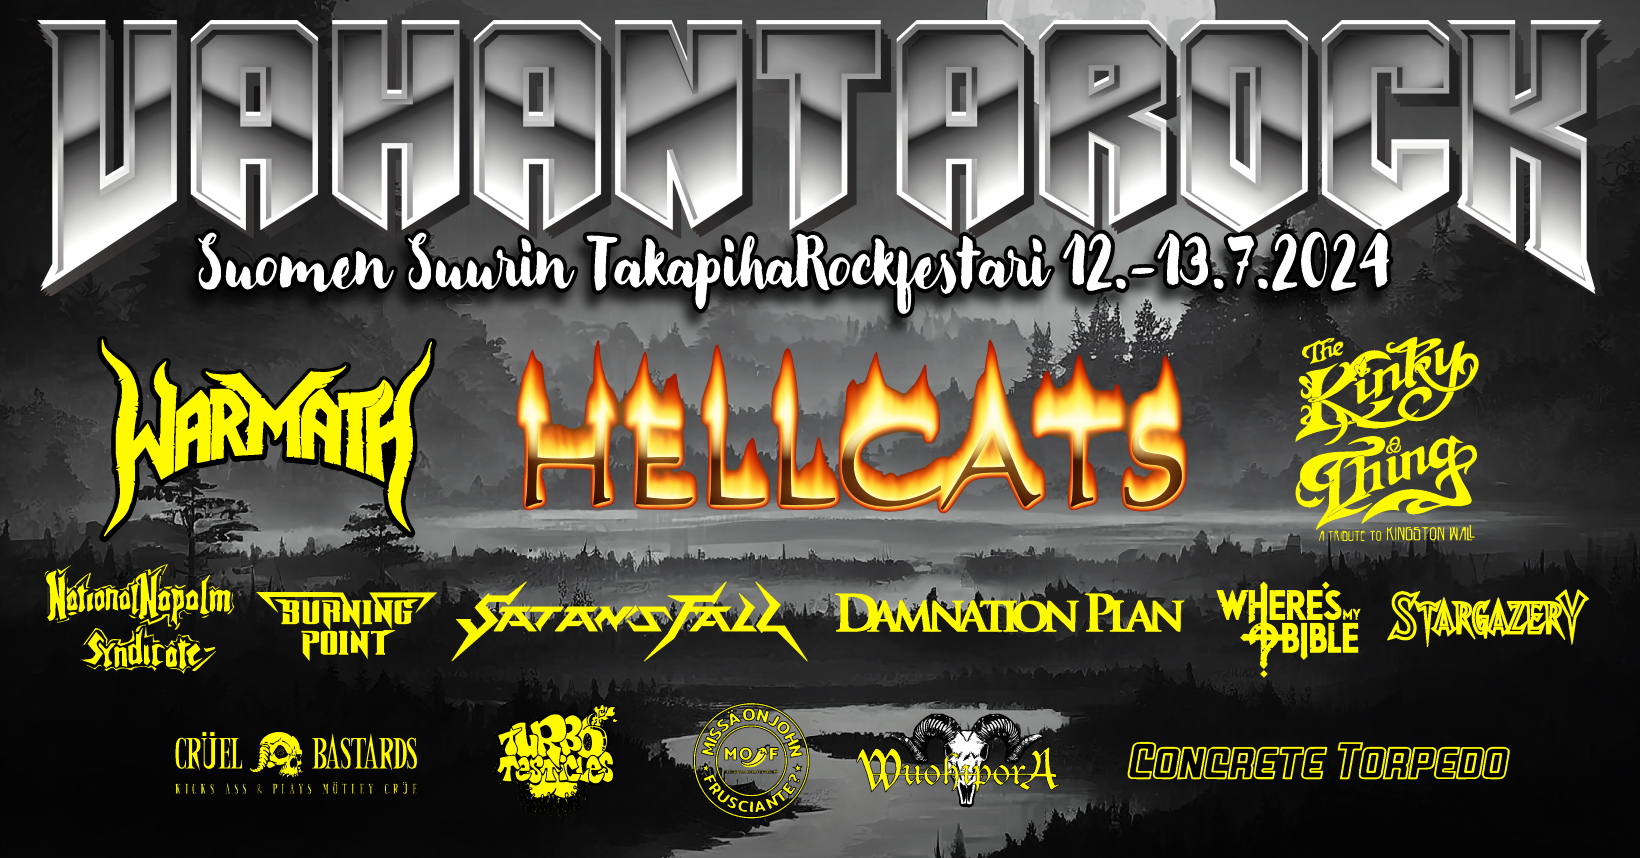 Vahanta Rock -juliste, jossa esiintyvien bändien nimet (Hellcats, Warmath, The Kinky Thing...) ja tapahtumatiedot 12.-13.7.2024.